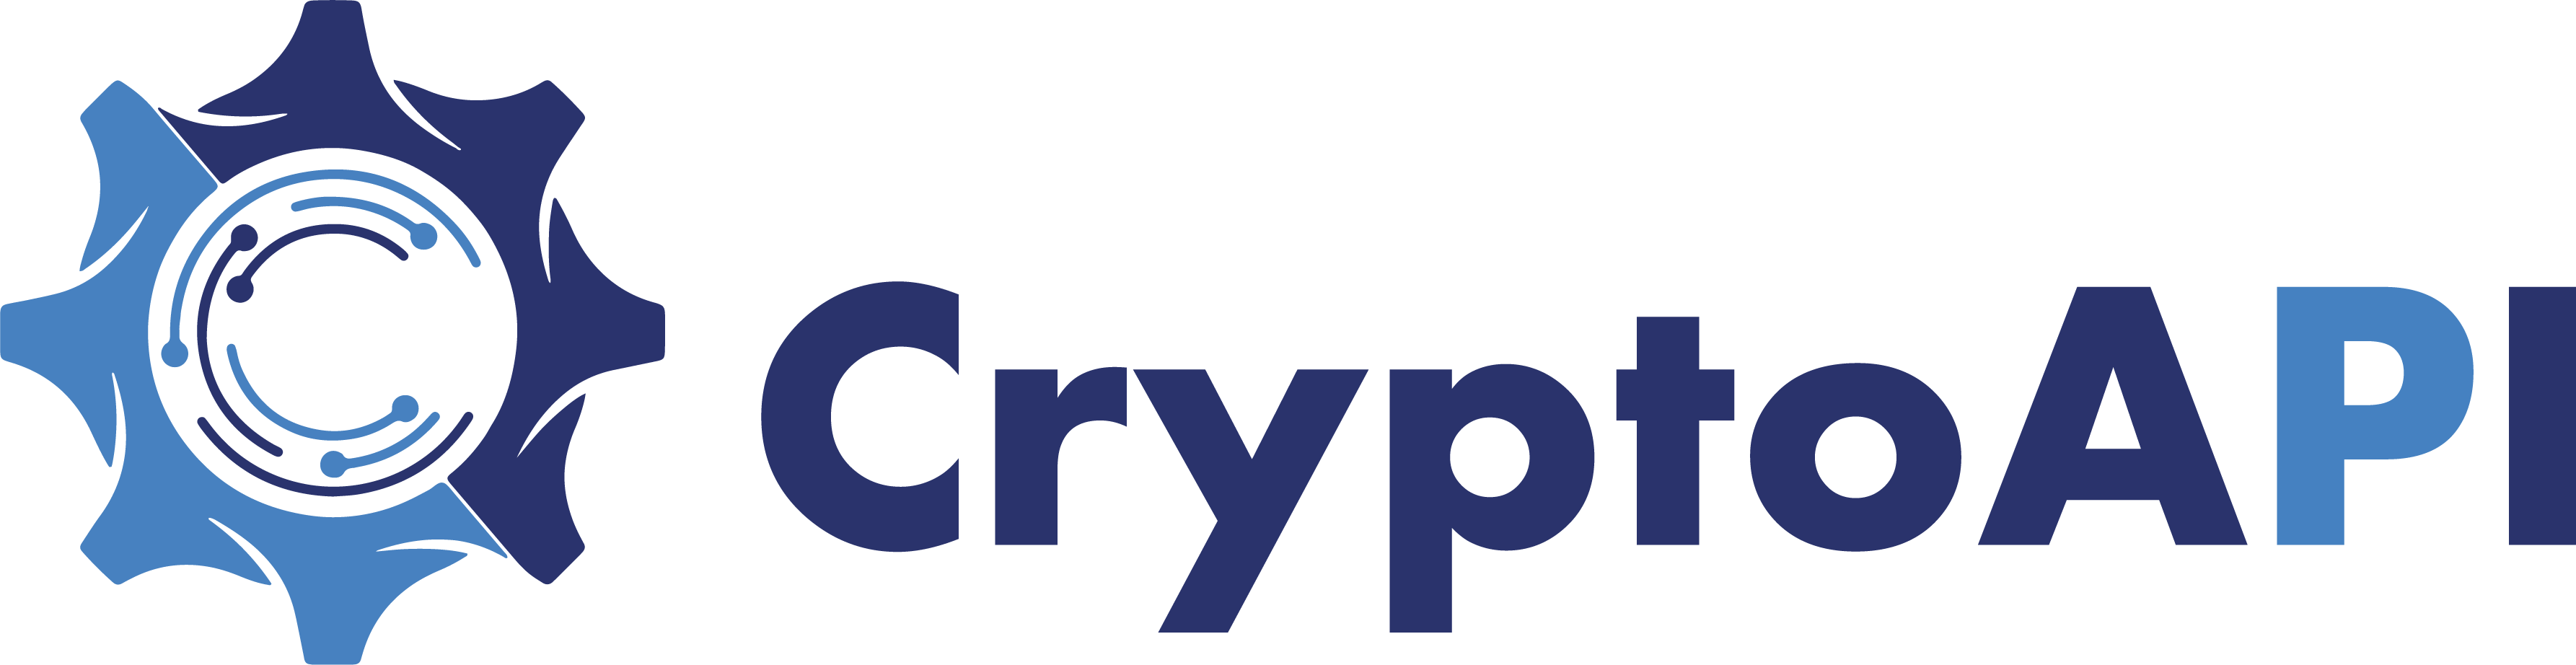 cryptoapi logo